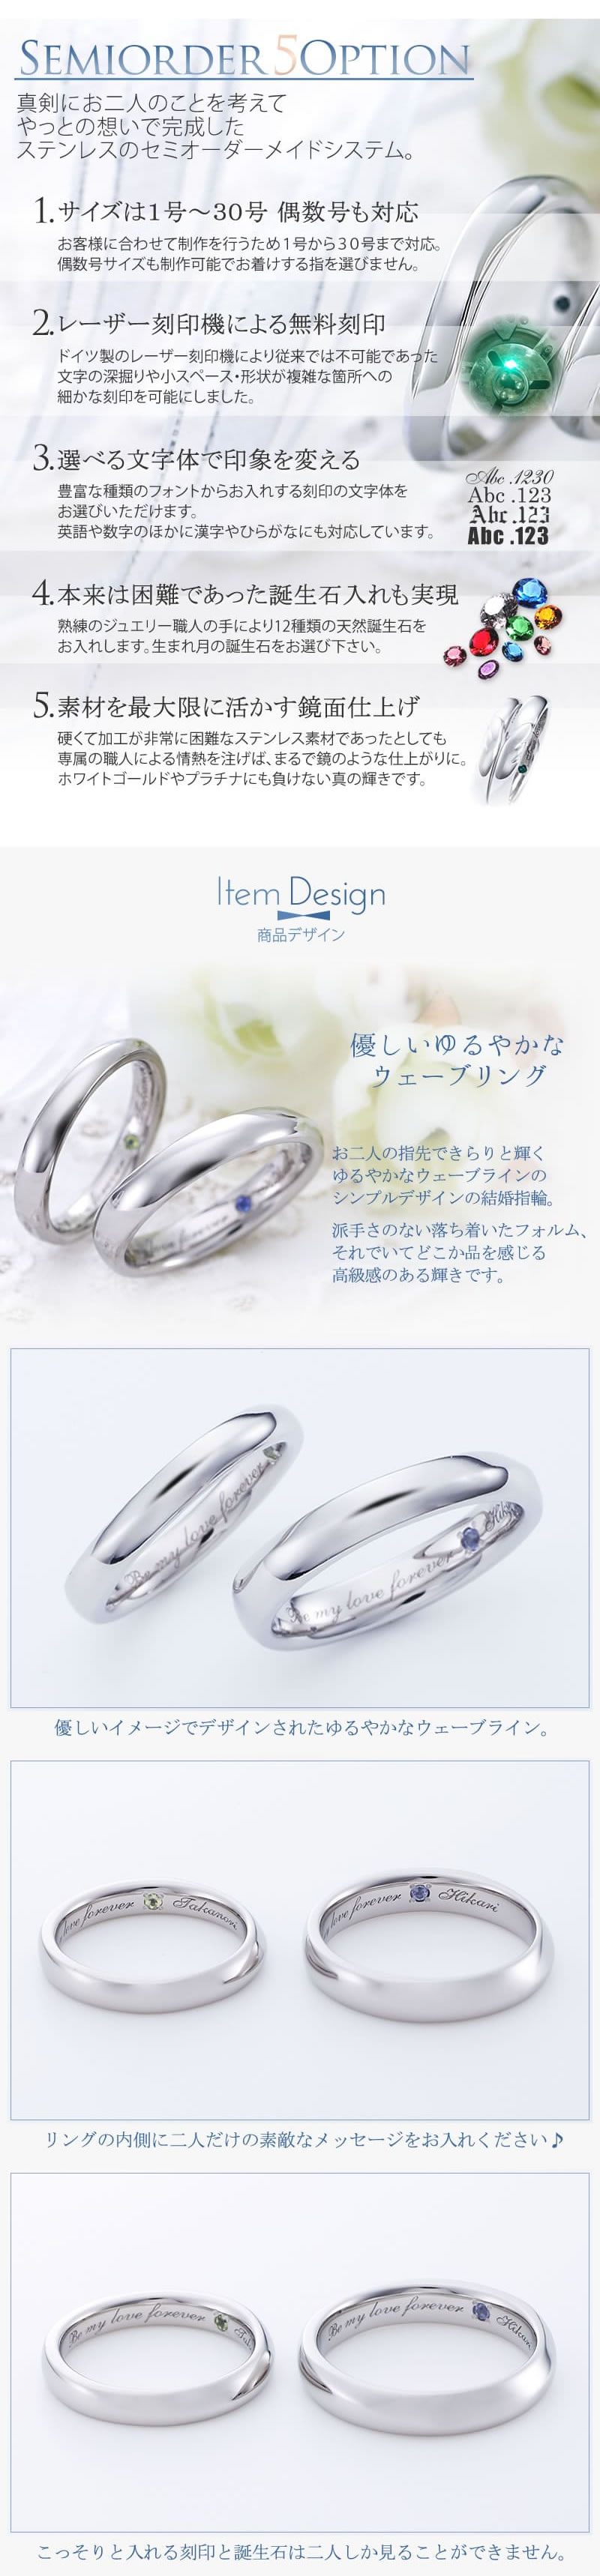 【結婚指輪】セミオーダーメイドステンレスリング ST108R-KS